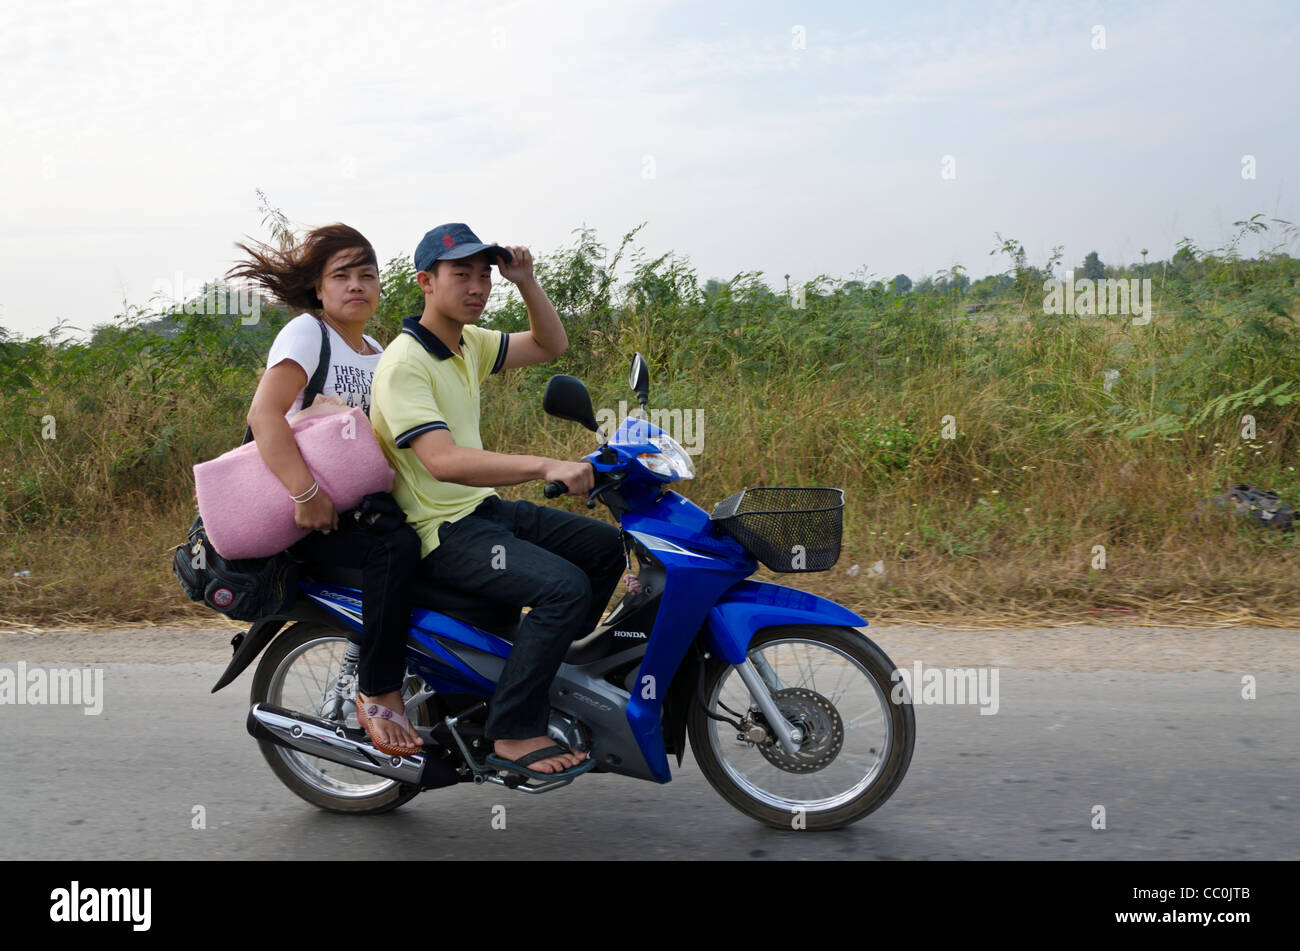 Les jeunes Thai man & woman traveling sur moto bleu regarde la caméra. L'homme est maintenant son chapeau & woman is holding une couverture pliée. Banque D'Images